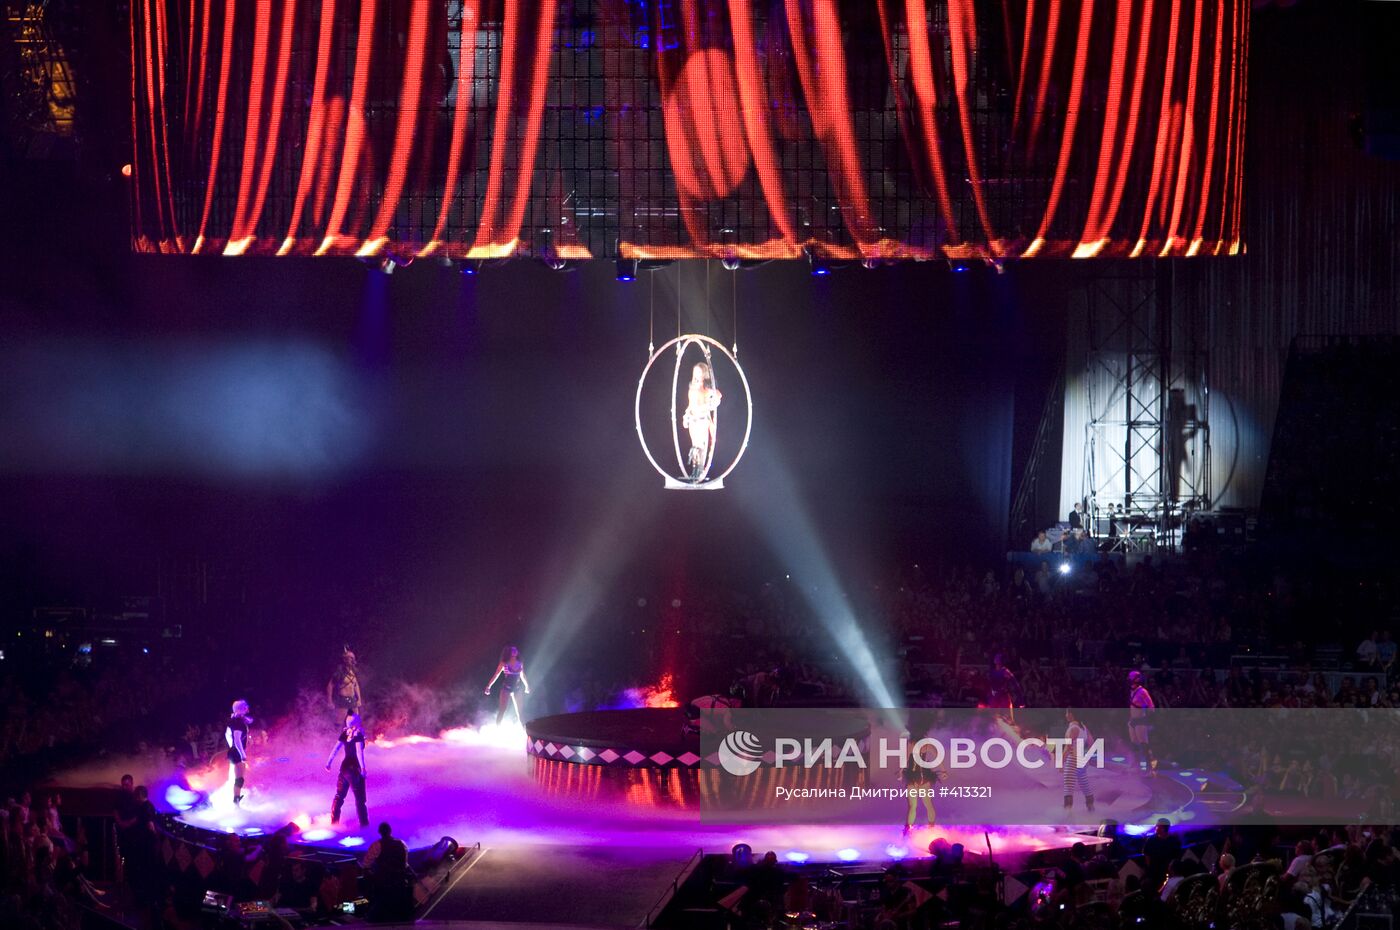 Шоу певицы Бритни Спирс Circus в Москве